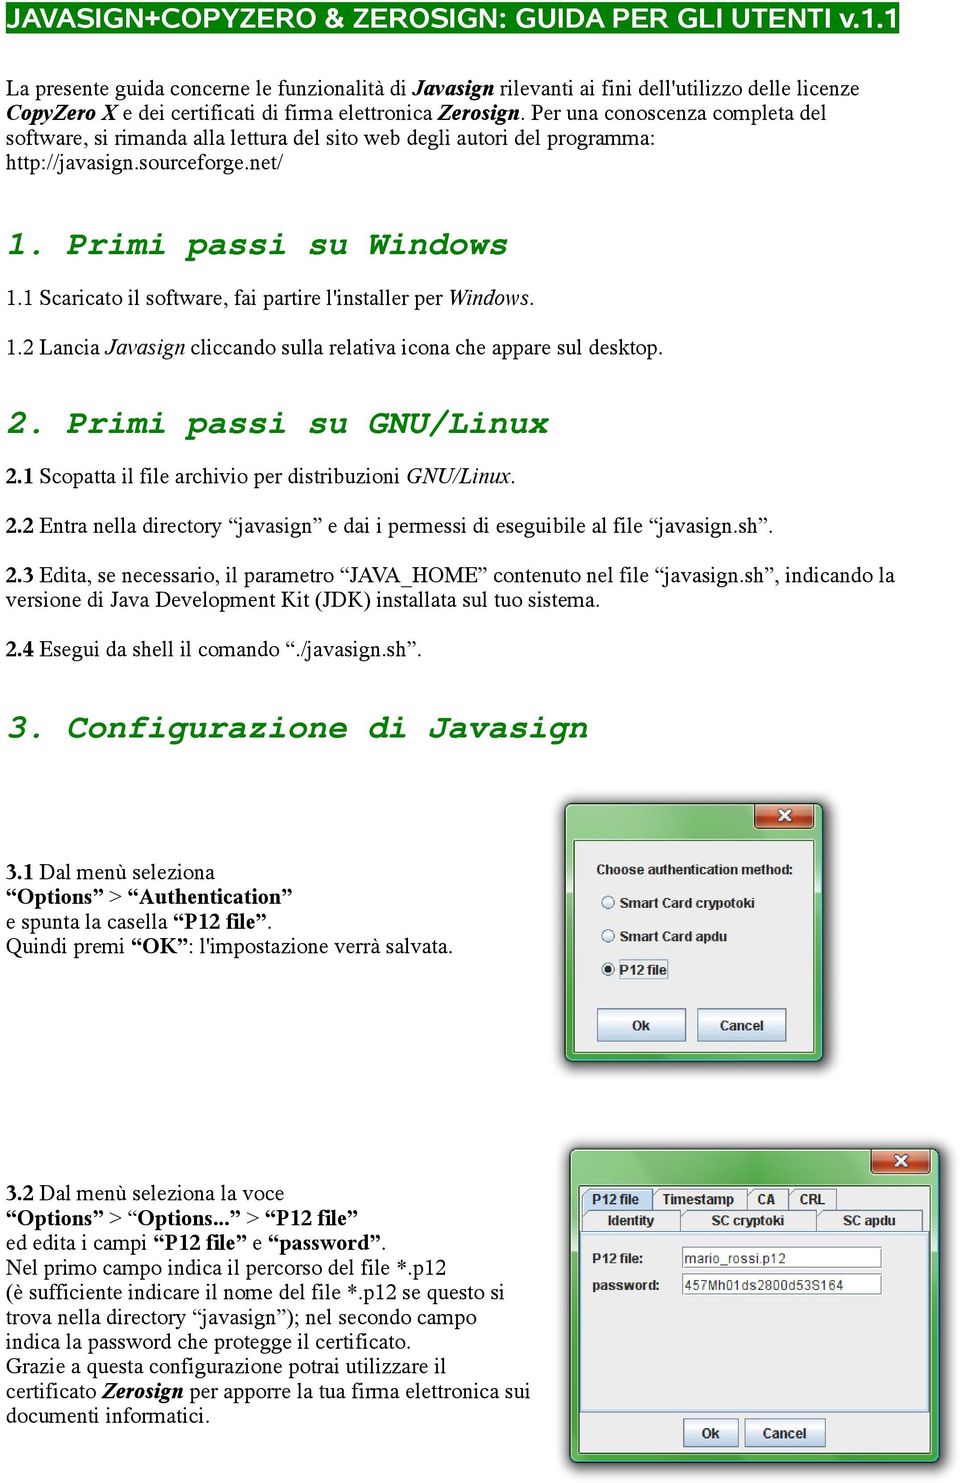 Per una conoscenza completa del software, si rimanda alla lettura del sito web degli autori del programma: http://javasign.sourceforge.net/ 1. Primi passi su Windows 1.